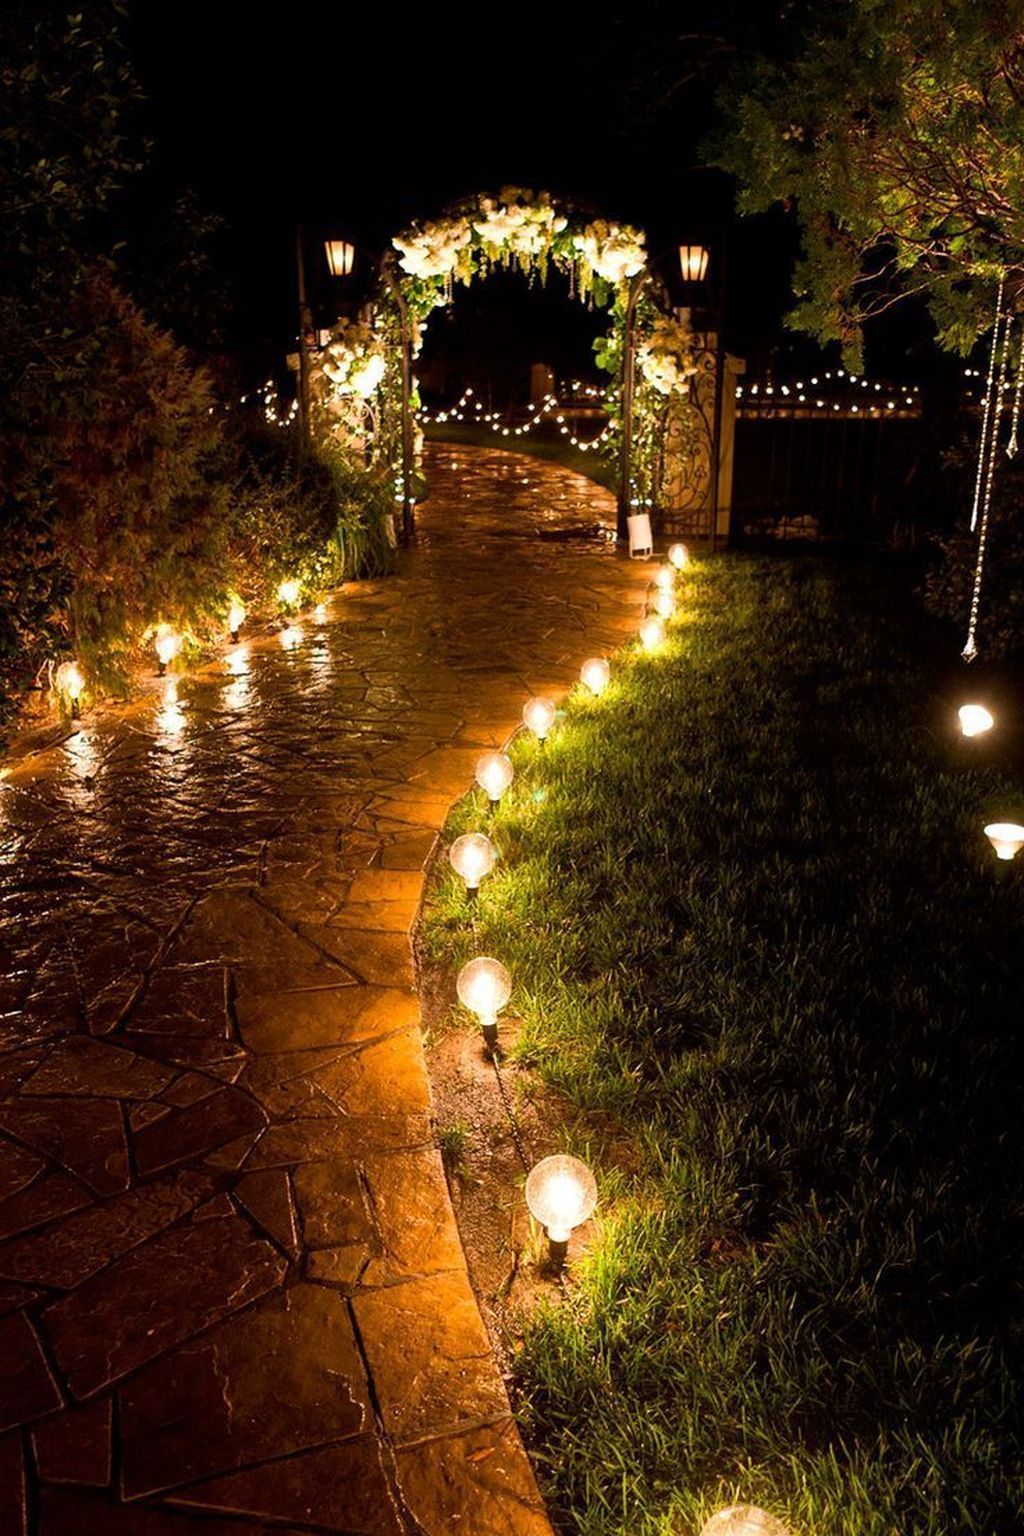 décoration lumineuse mariage en plein air pendant la nuit ambiance romantique